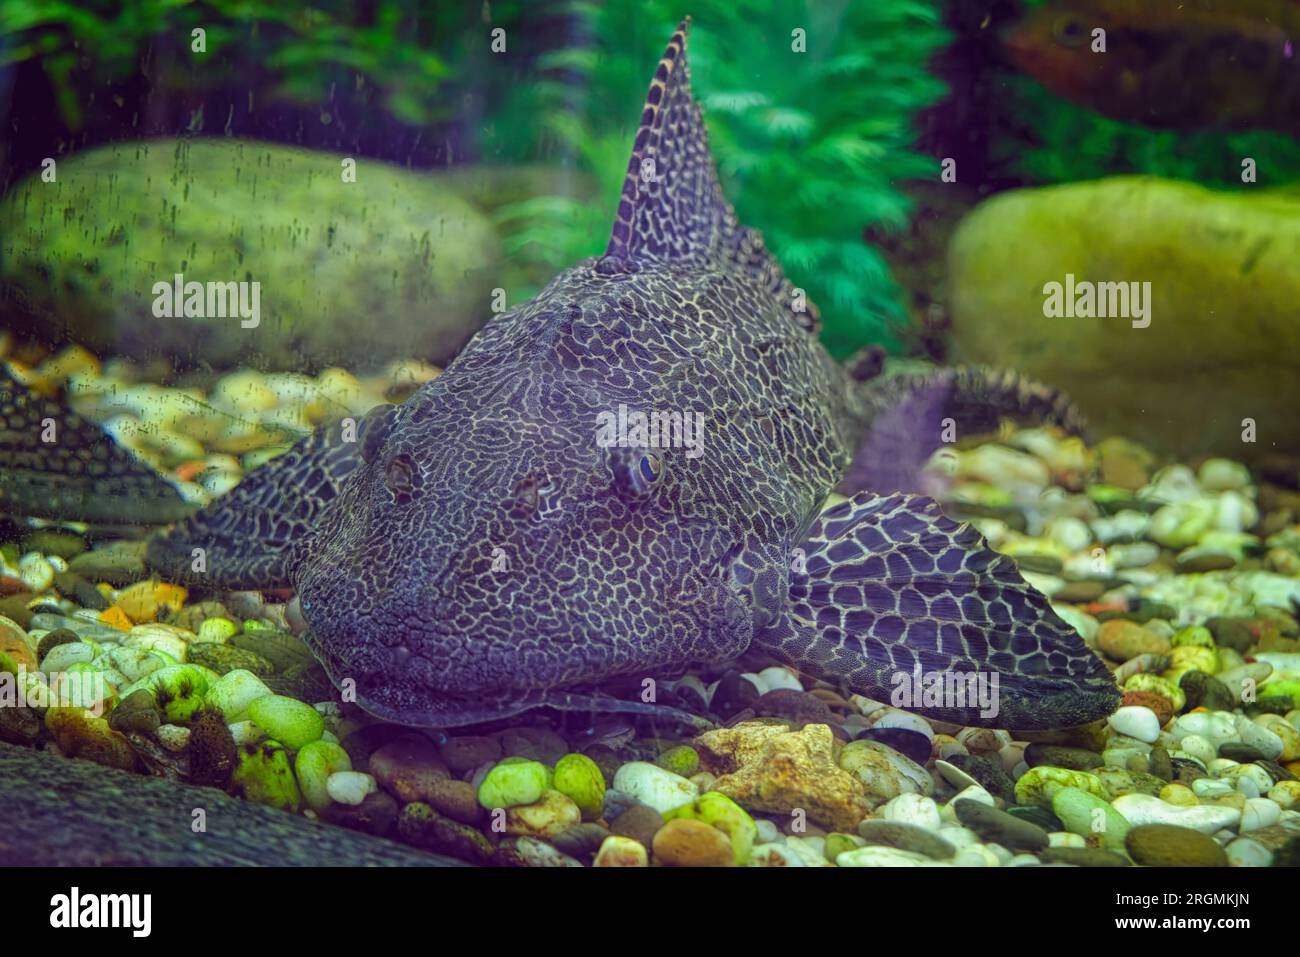 Sheatfish Pterygoplichthys gibbiceps close-up in aquarium. Stock Photo